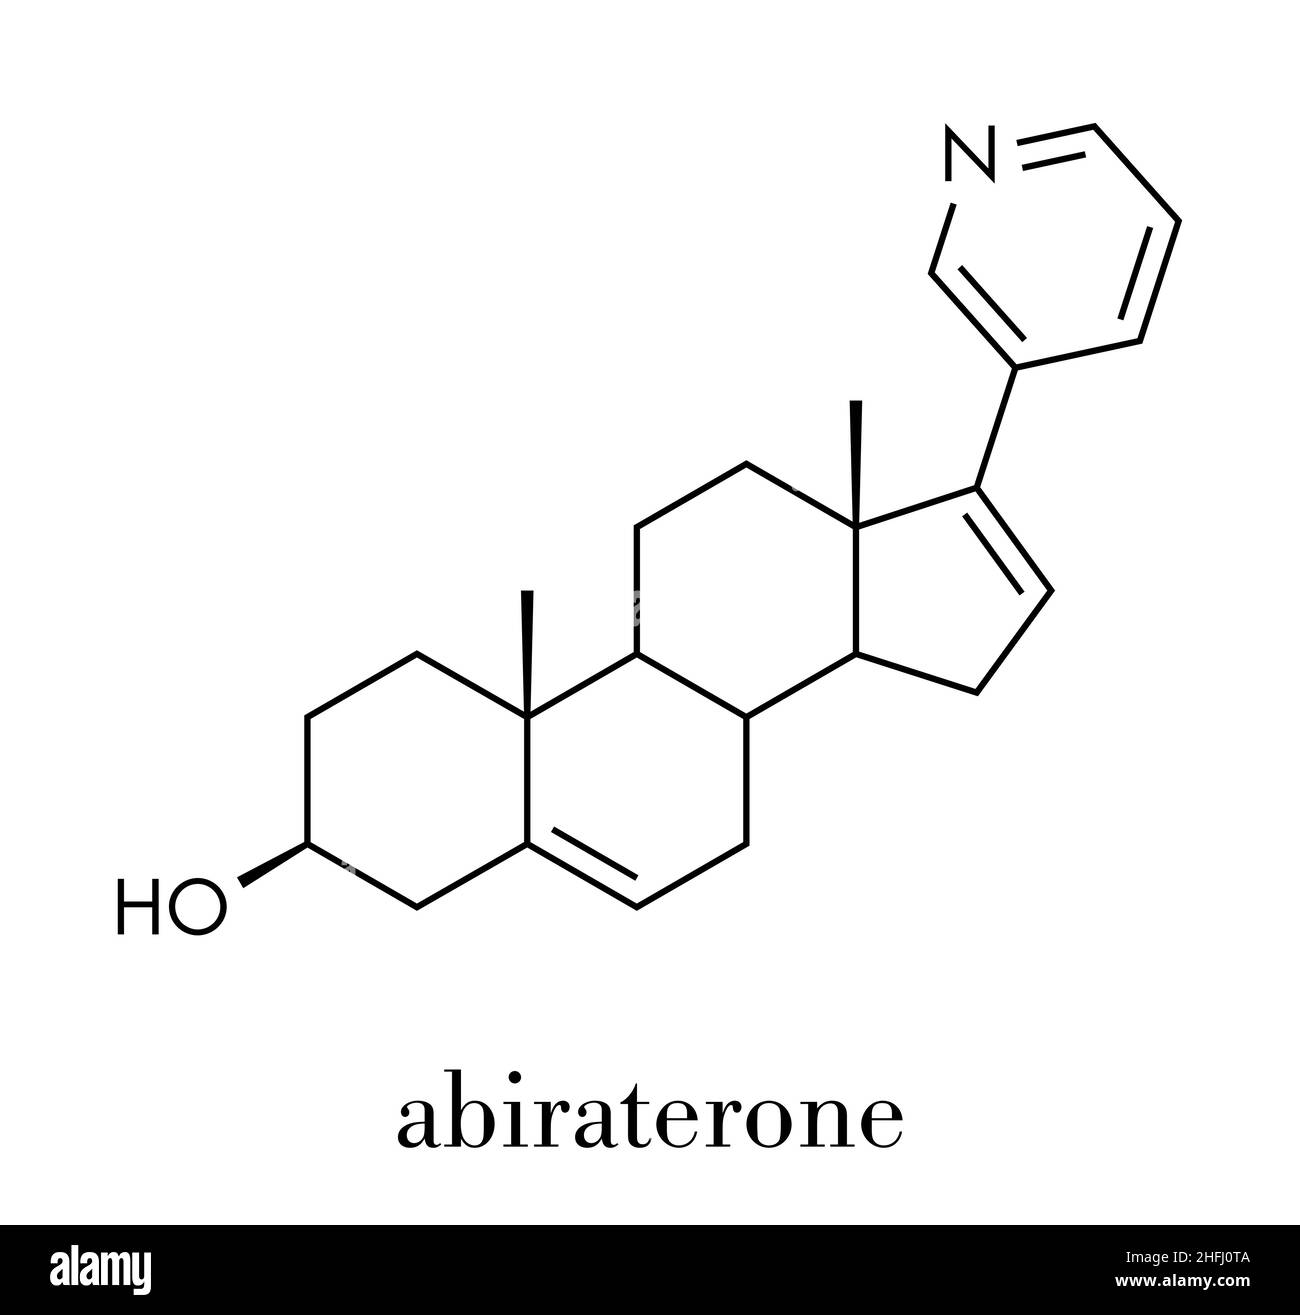 Abiraterone prostate cancer drug molecule. Skeletal formula. Stock Vector